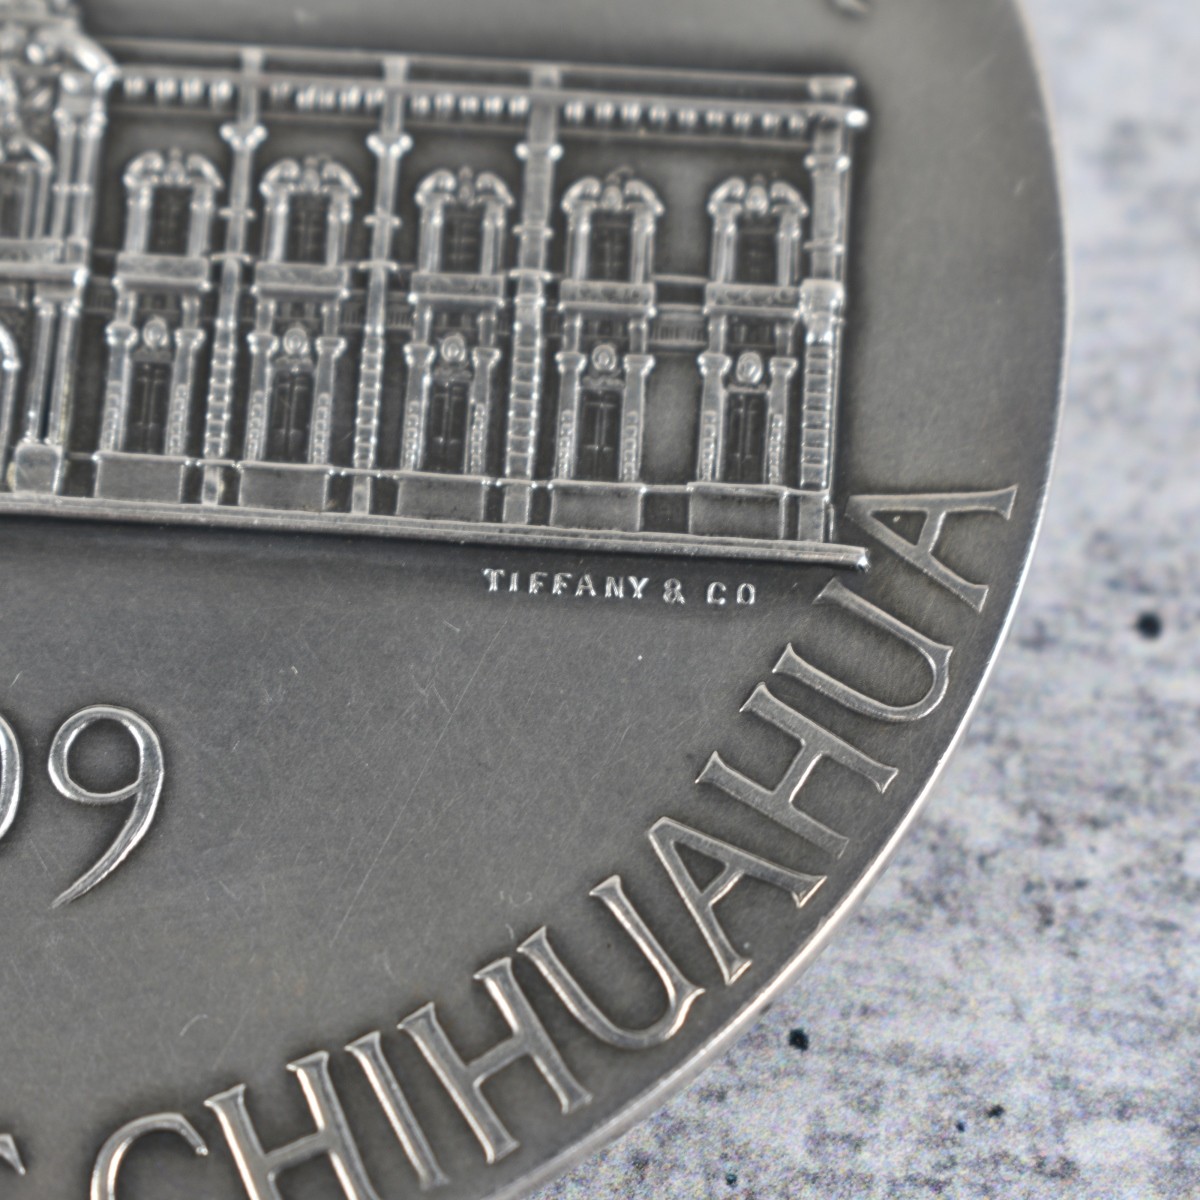 1909 Tiffany & Co Silver Commemorative Token